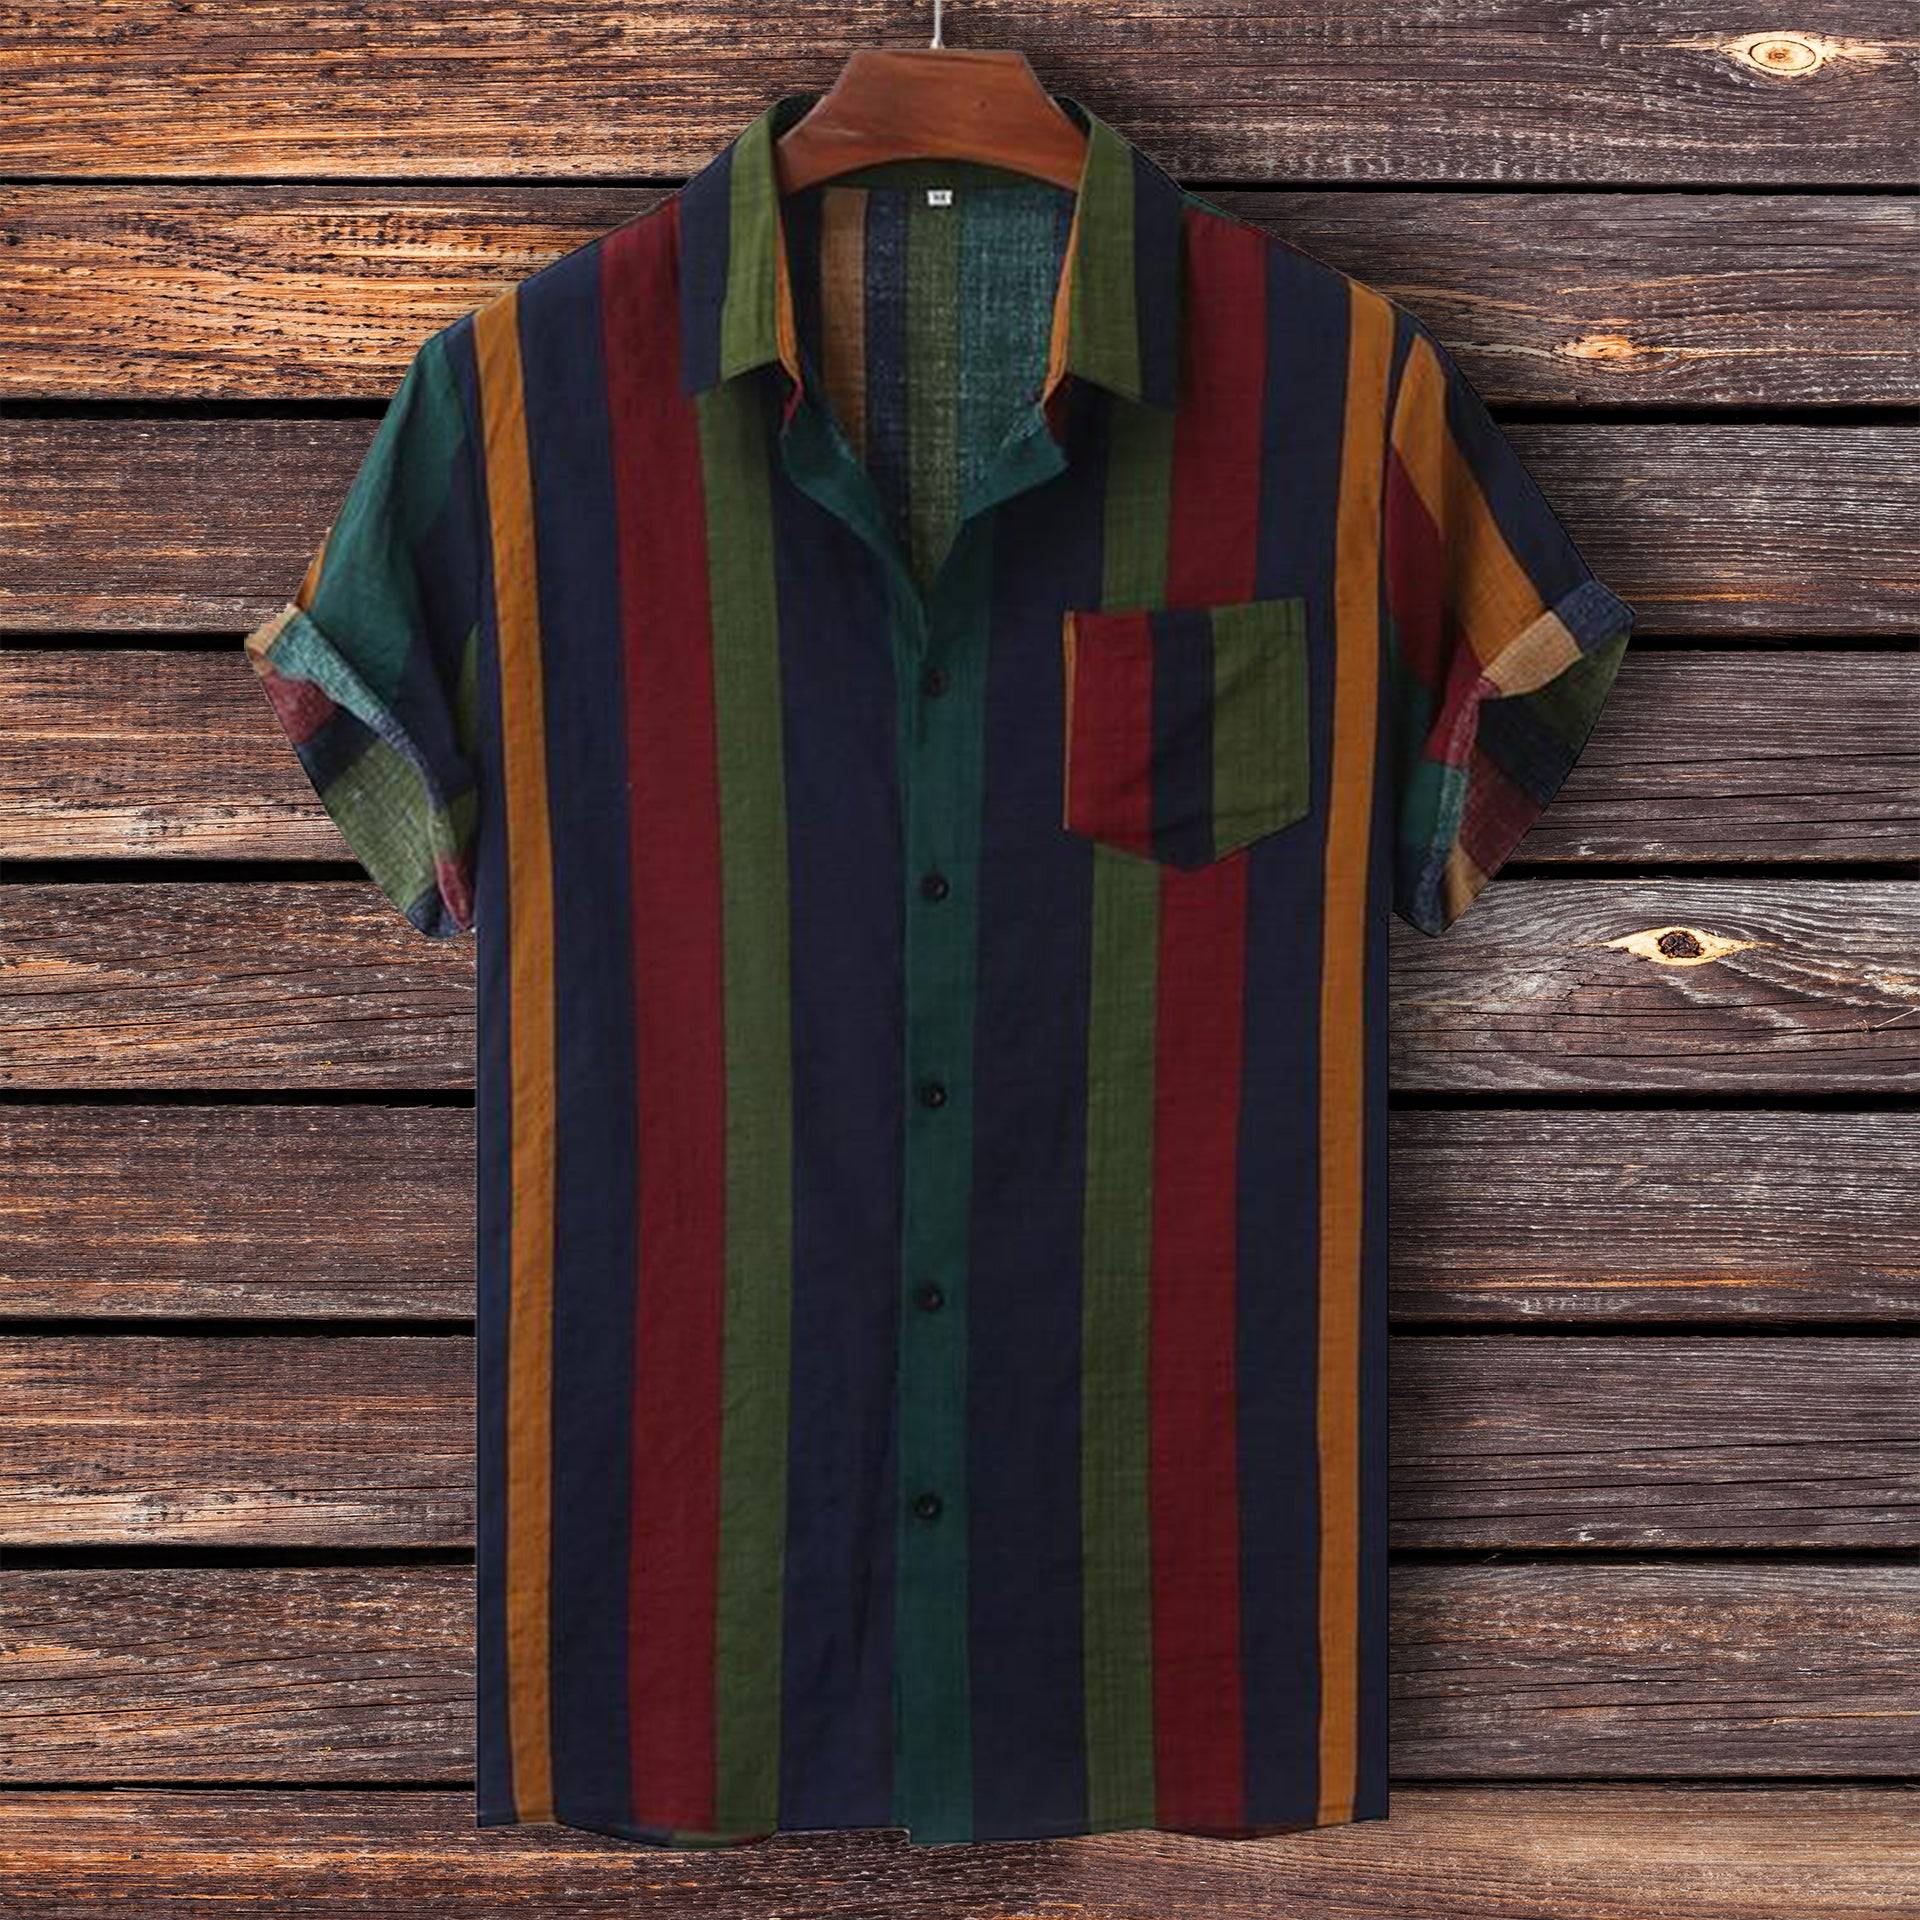 Retro Striped Hawaiian Shirt